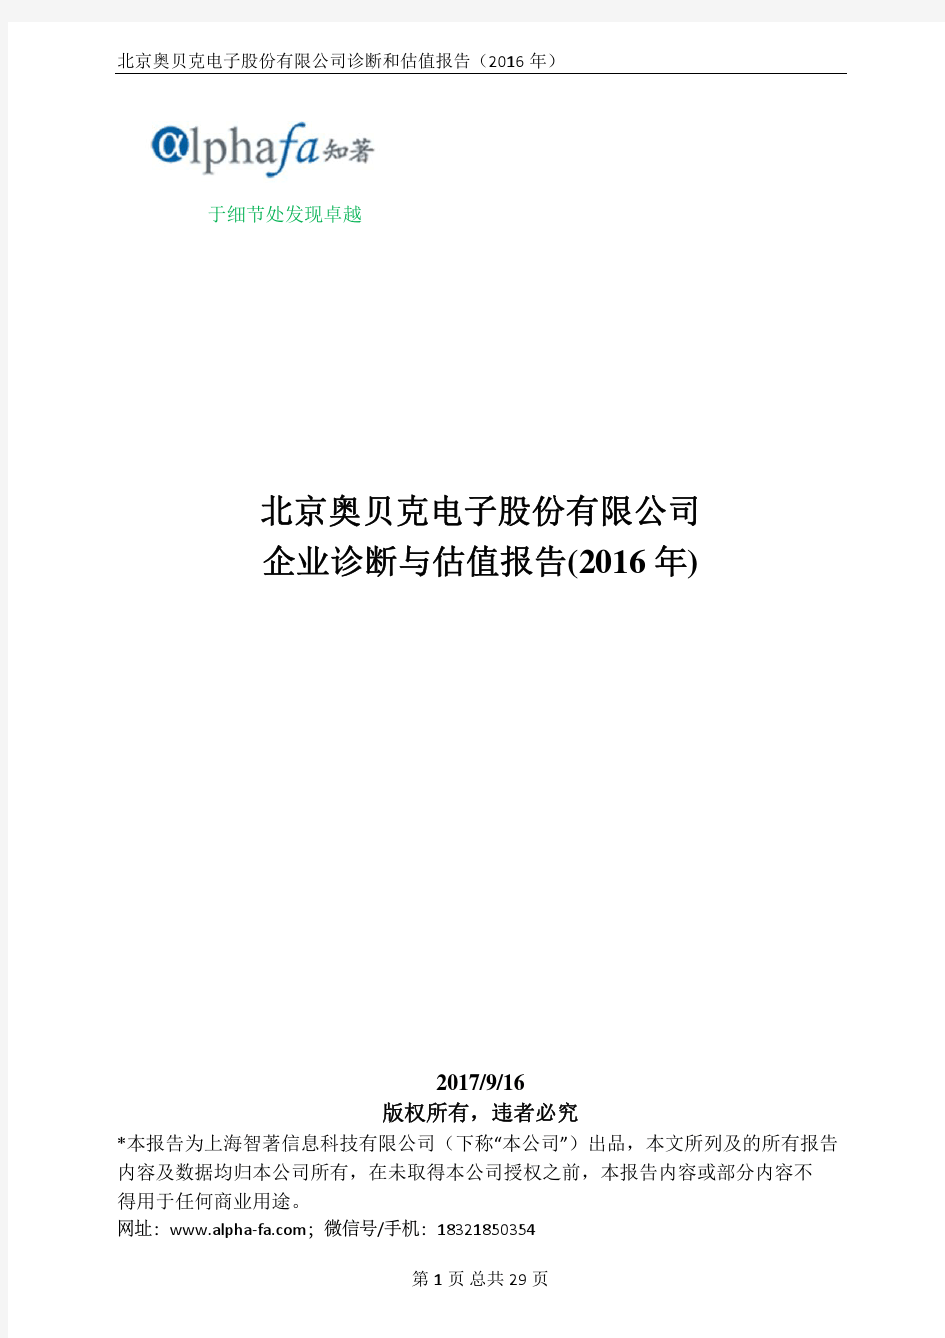 北京奥贝克电子股份有限公司企业诊断与估值报告(2016年)